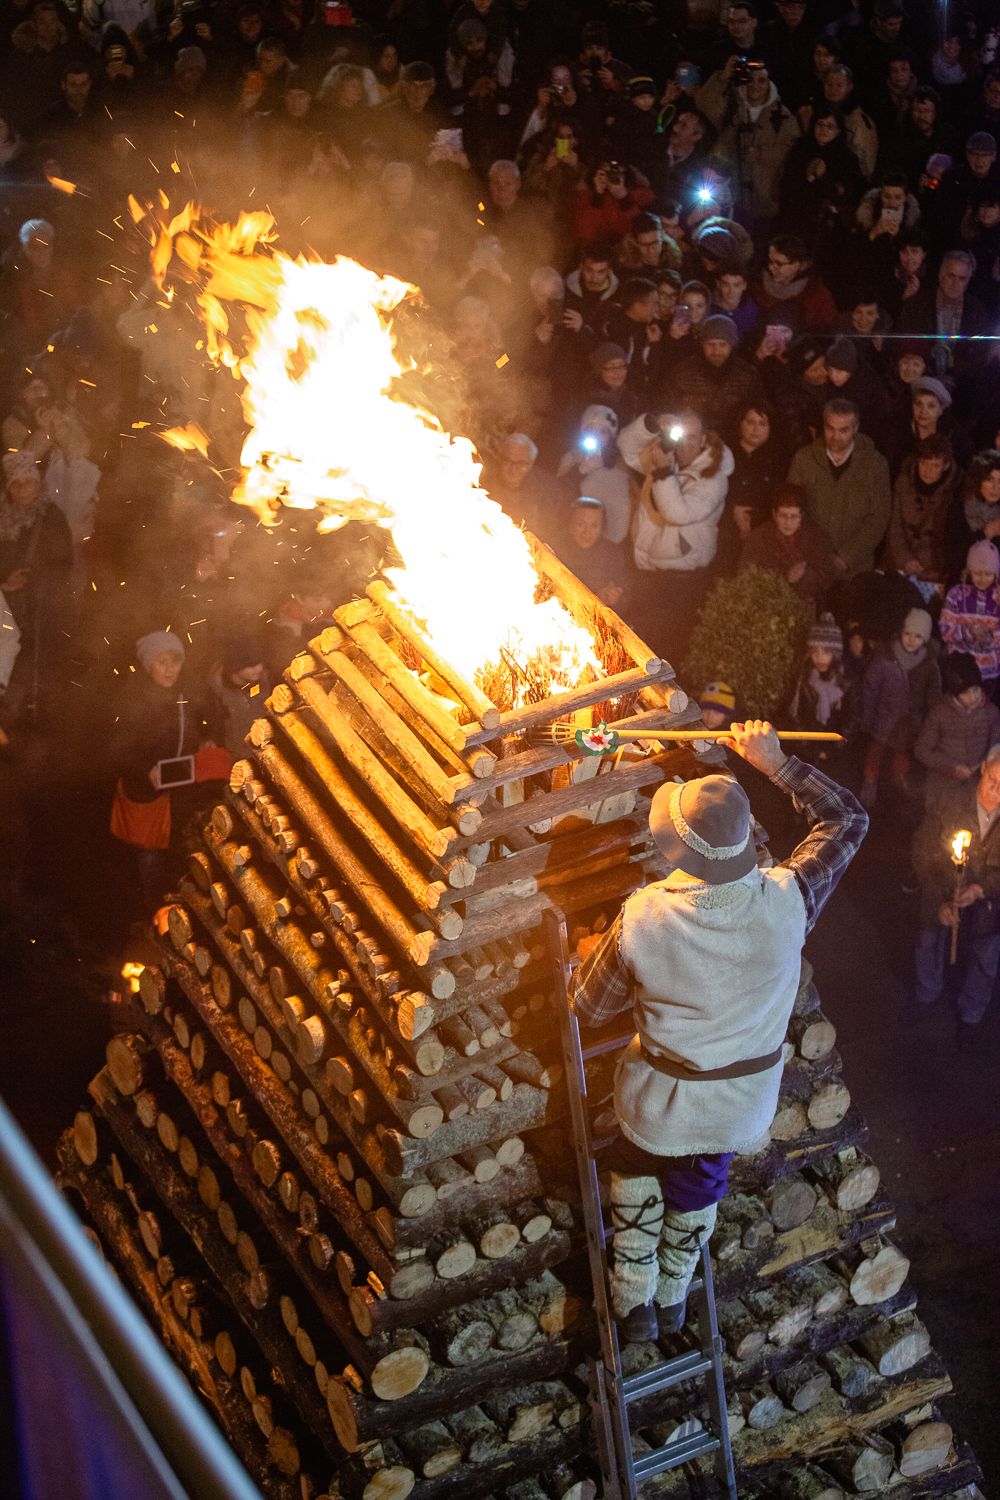 Il Natale di fuoco di Abbadia San Salvatore (SI):
la Città delle Fiaccole celebra una tradizione unica